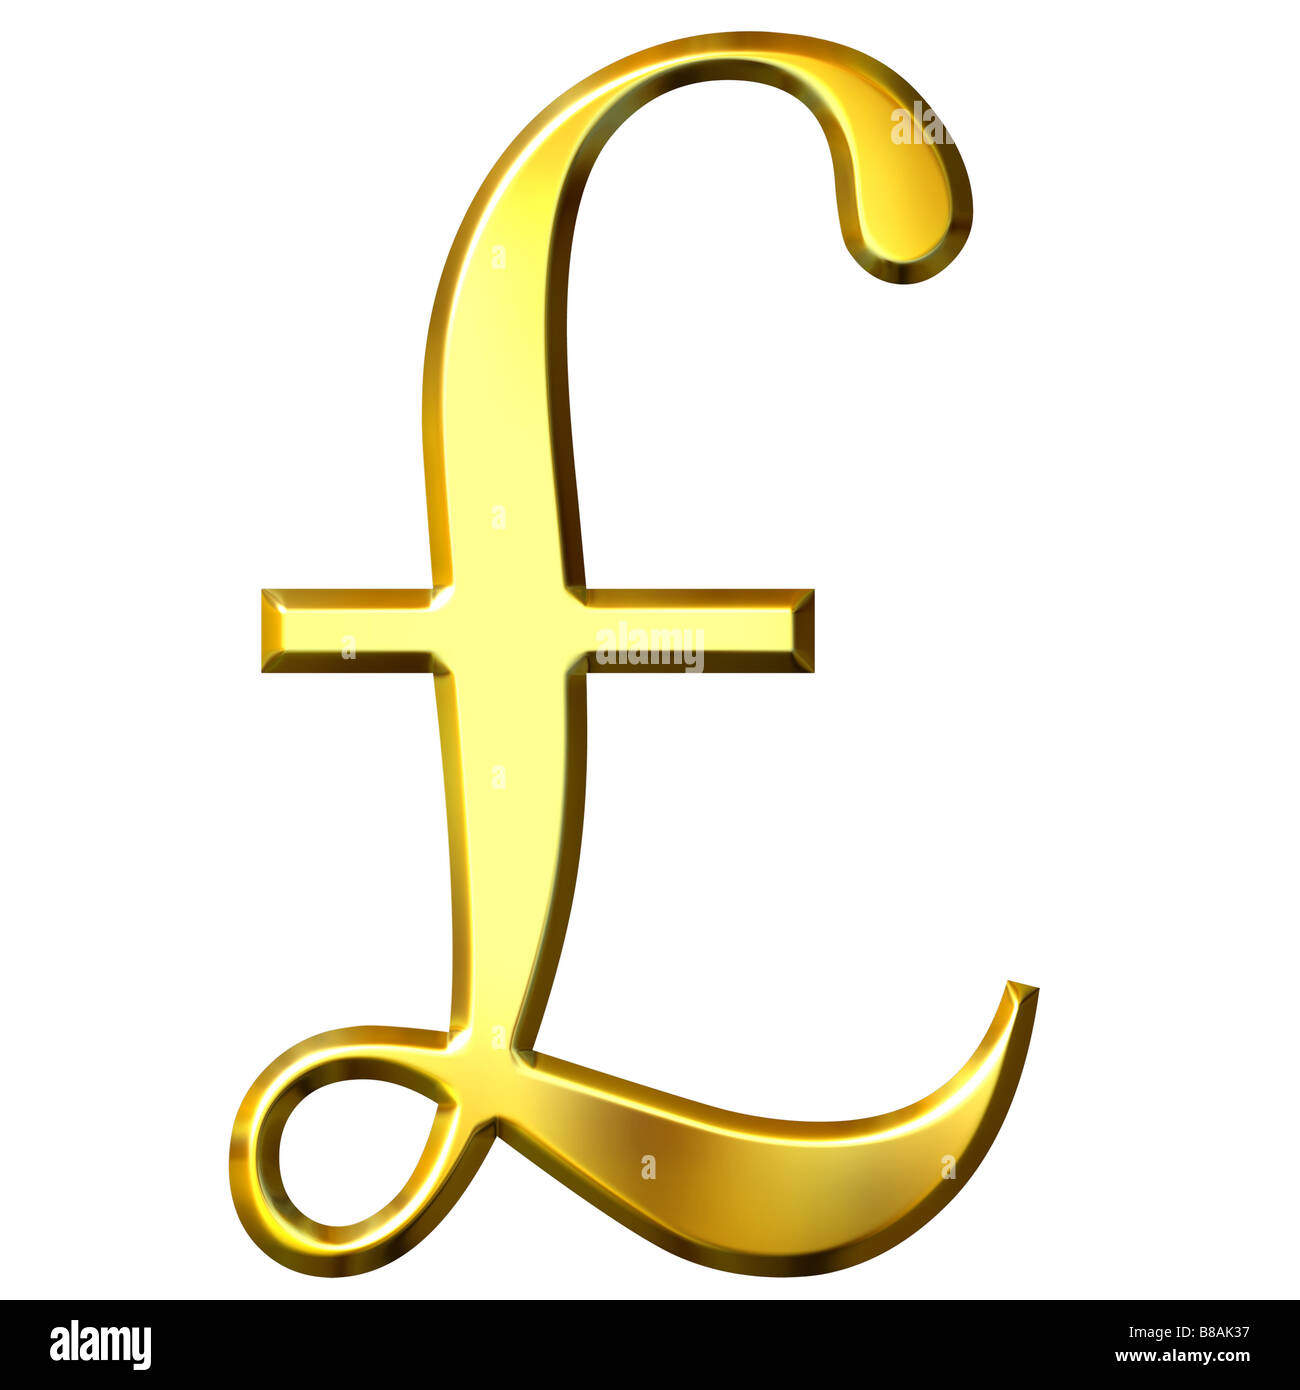 Фунт стерлингов значок. Знак фунта. Фунт стерлингов символ. Английский фунт символ. Британский фунт символ.